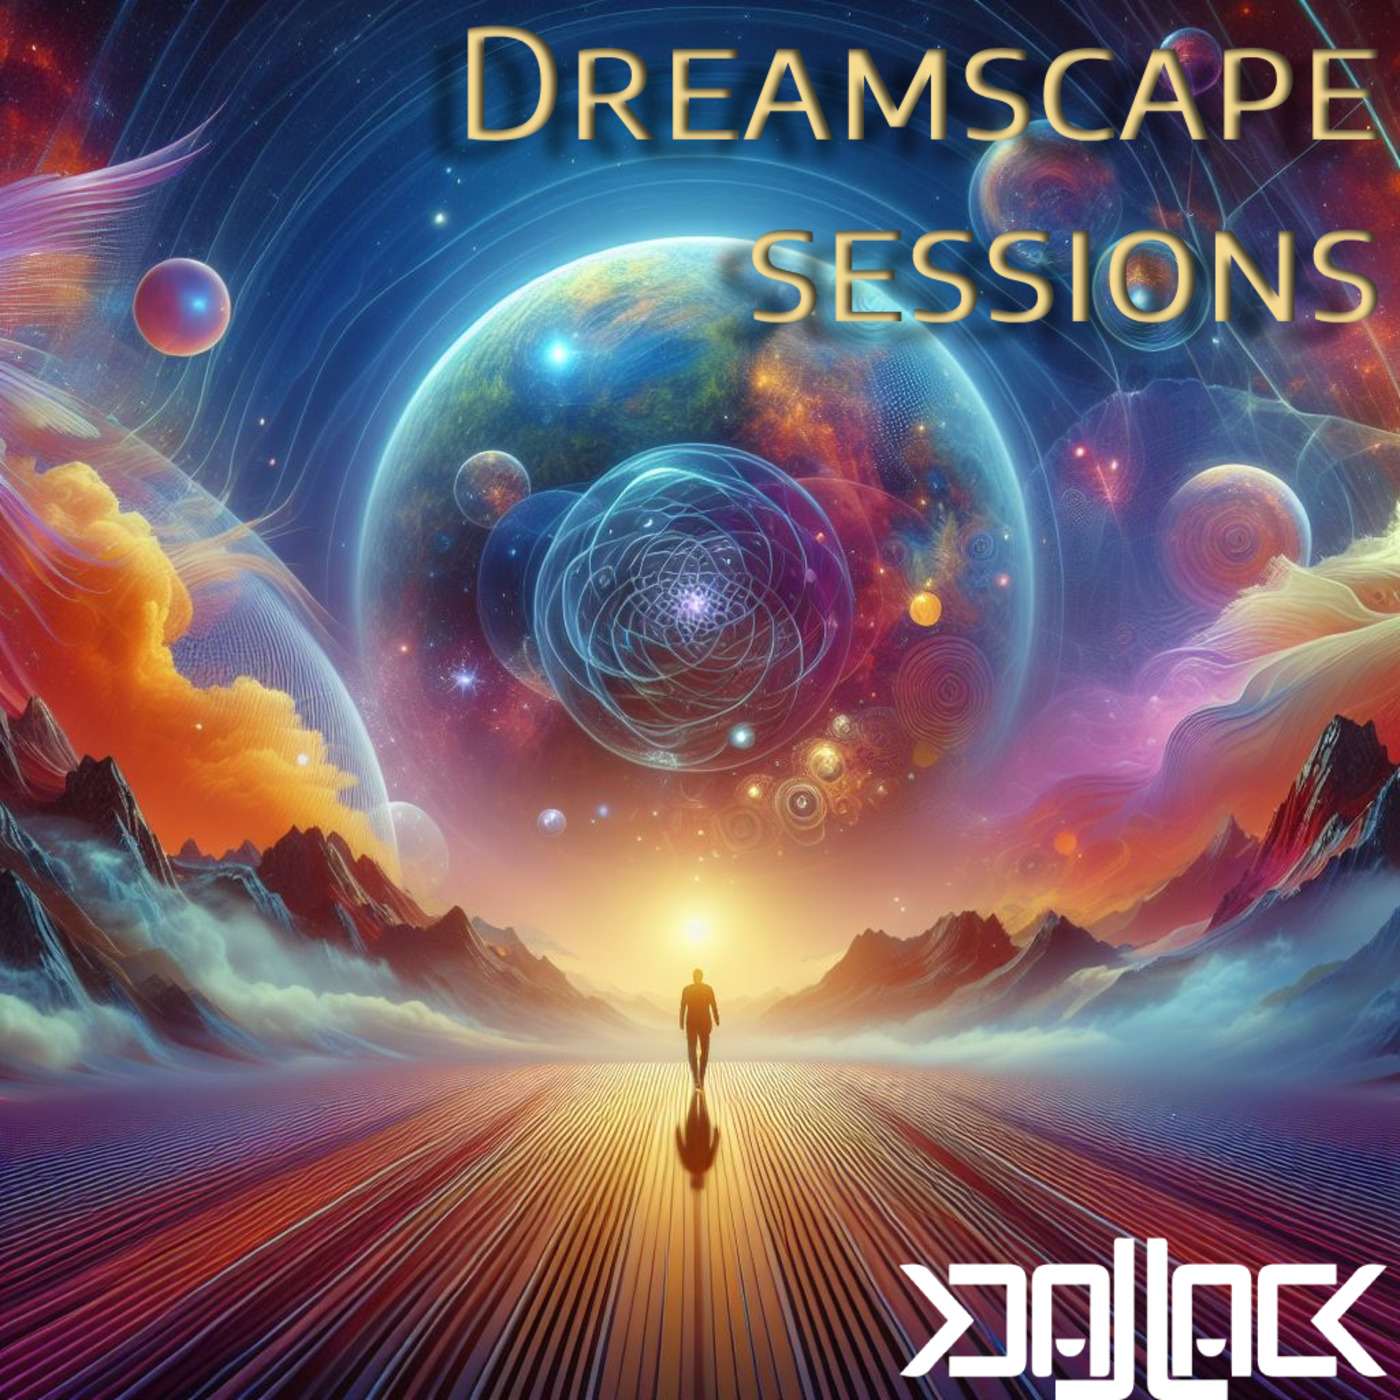 Dreamscape Sessions 002